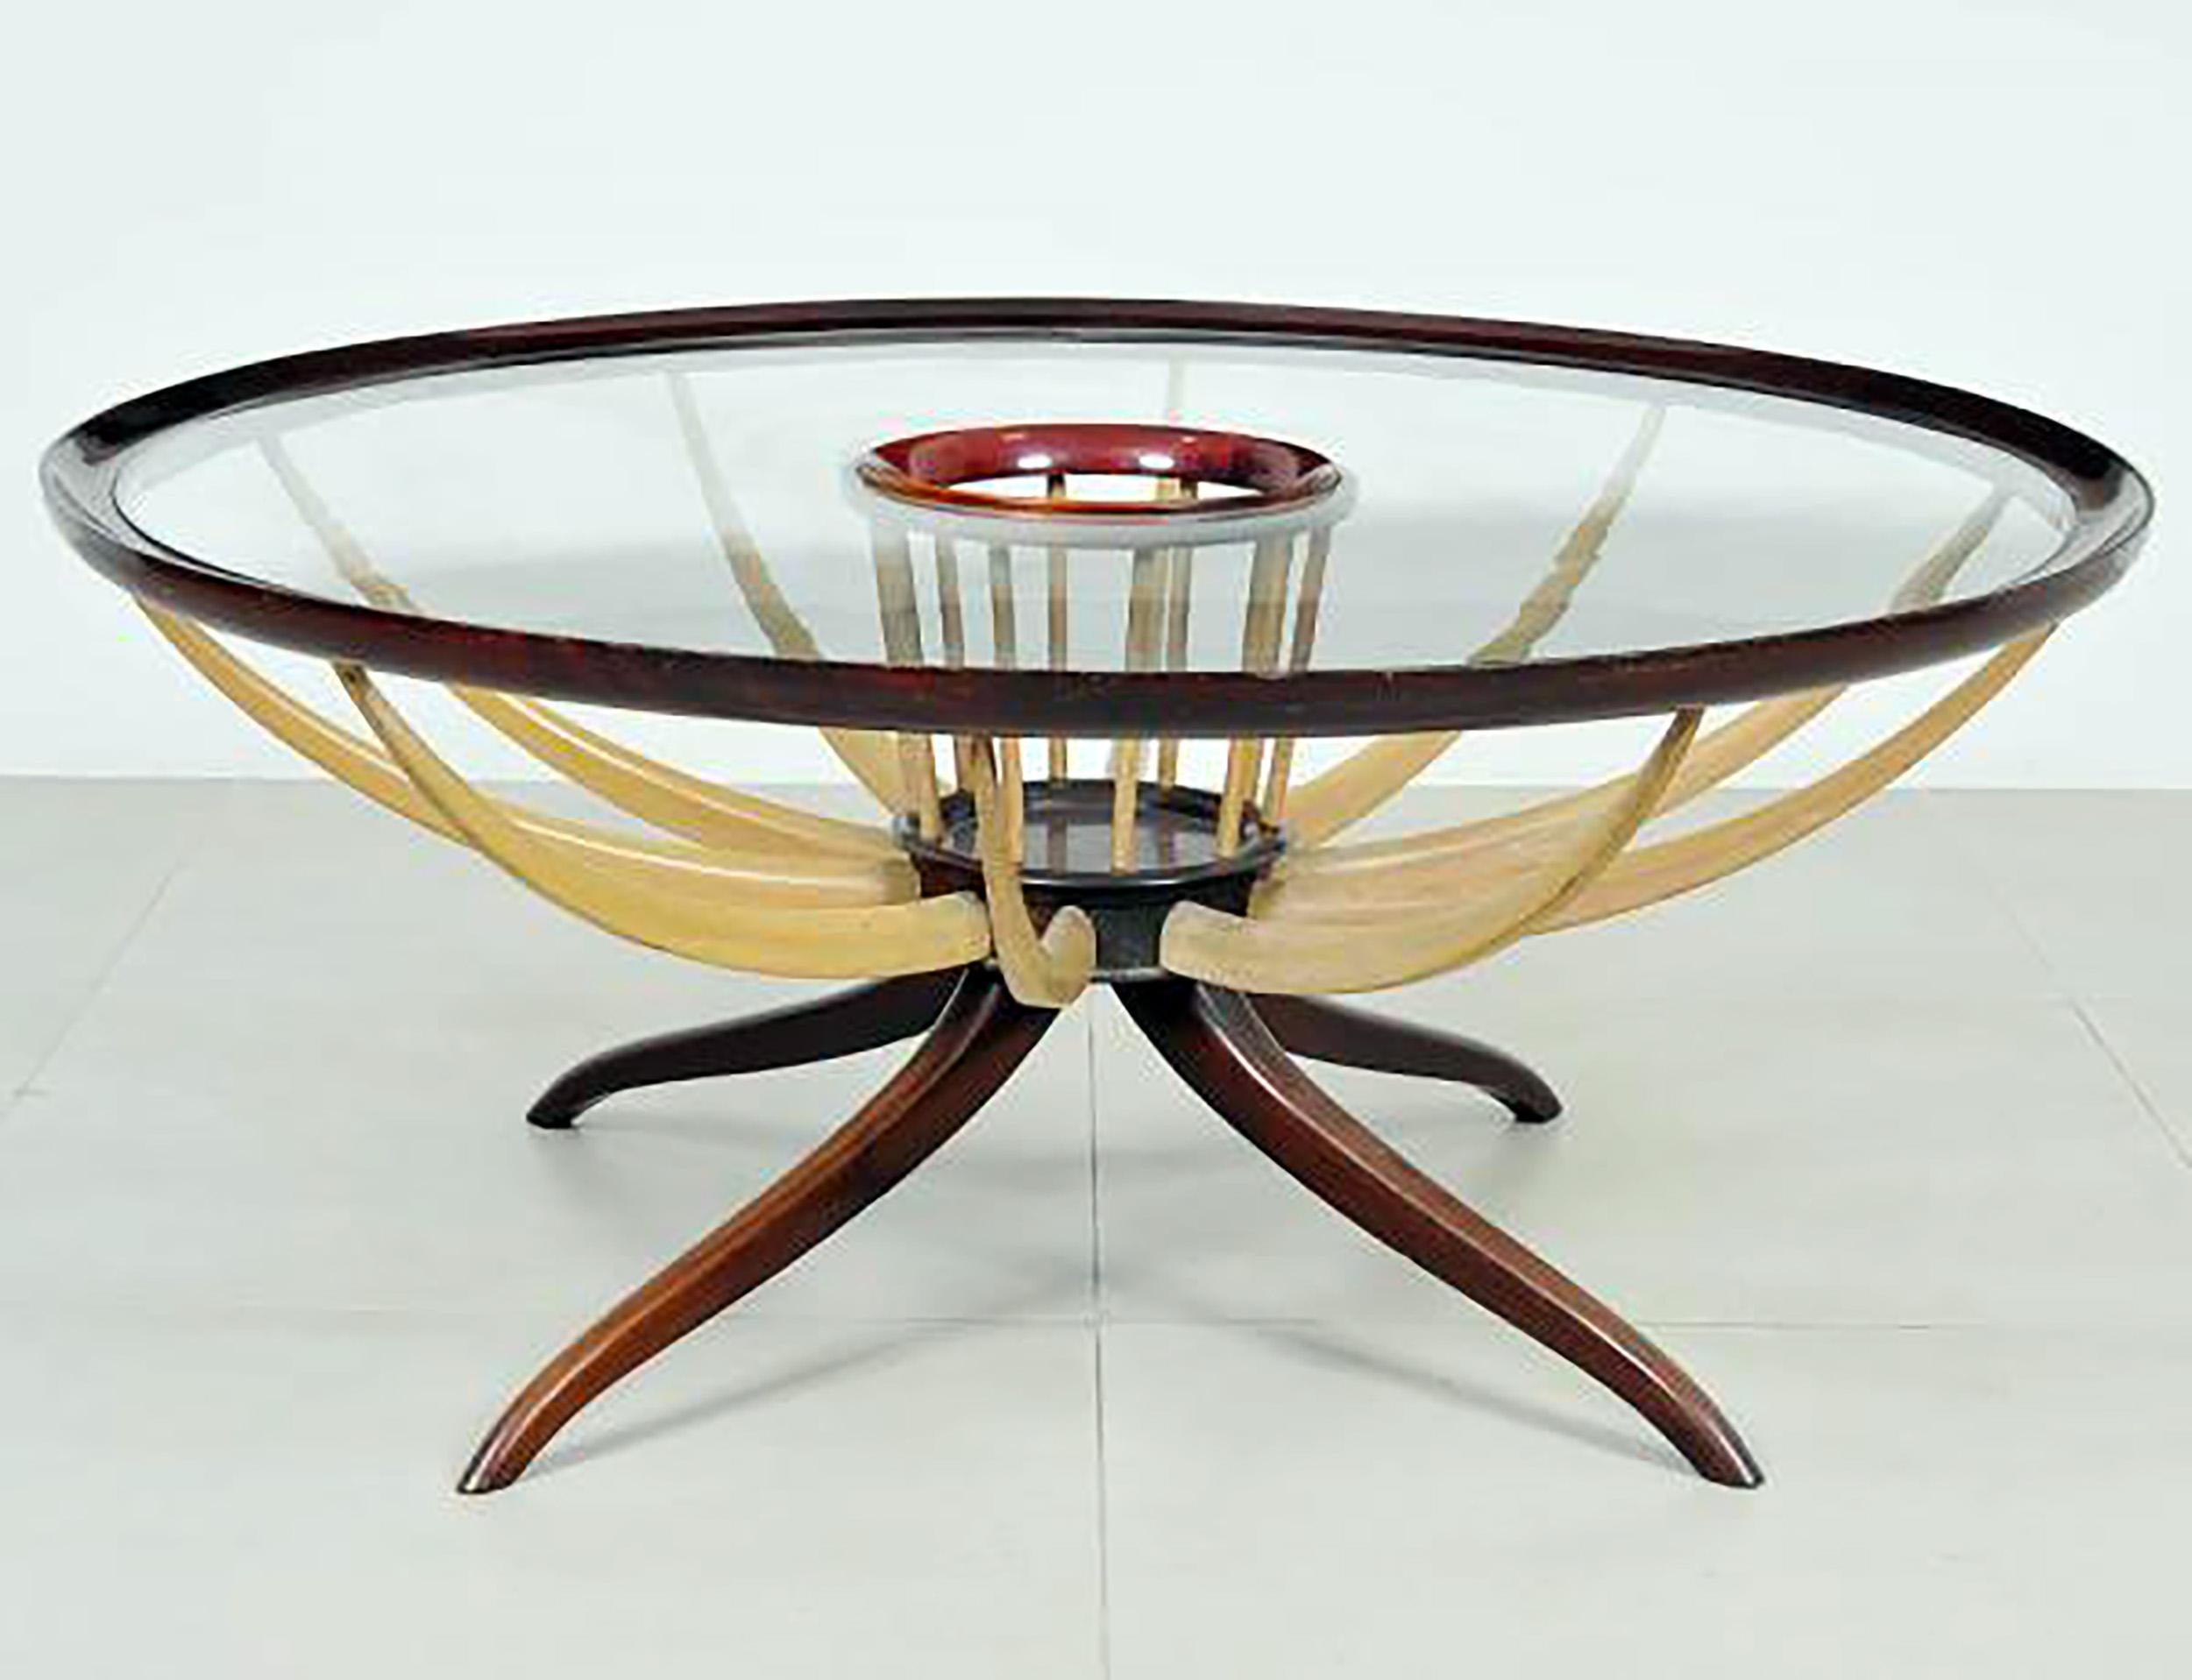 Dieser Tisch ist inspiriert von dem Modell 